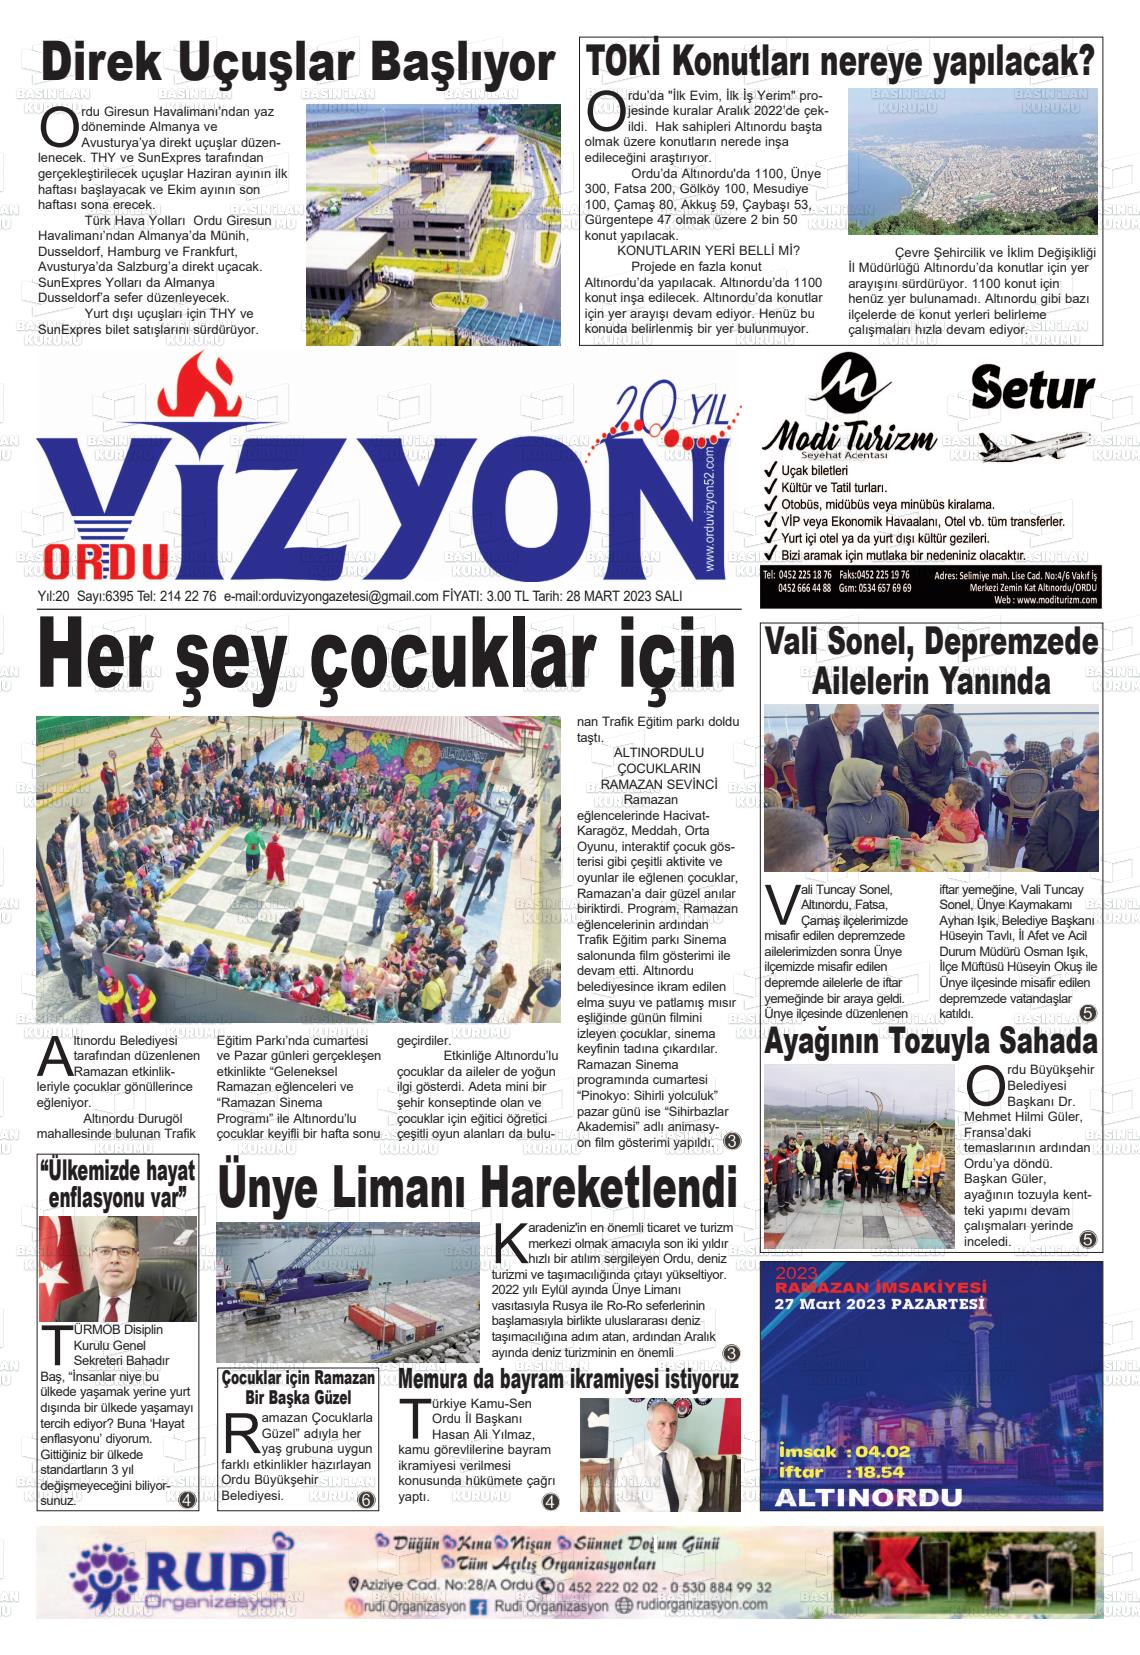 28 Mart 2023 Ordu Vizyon Gazete Manşeti